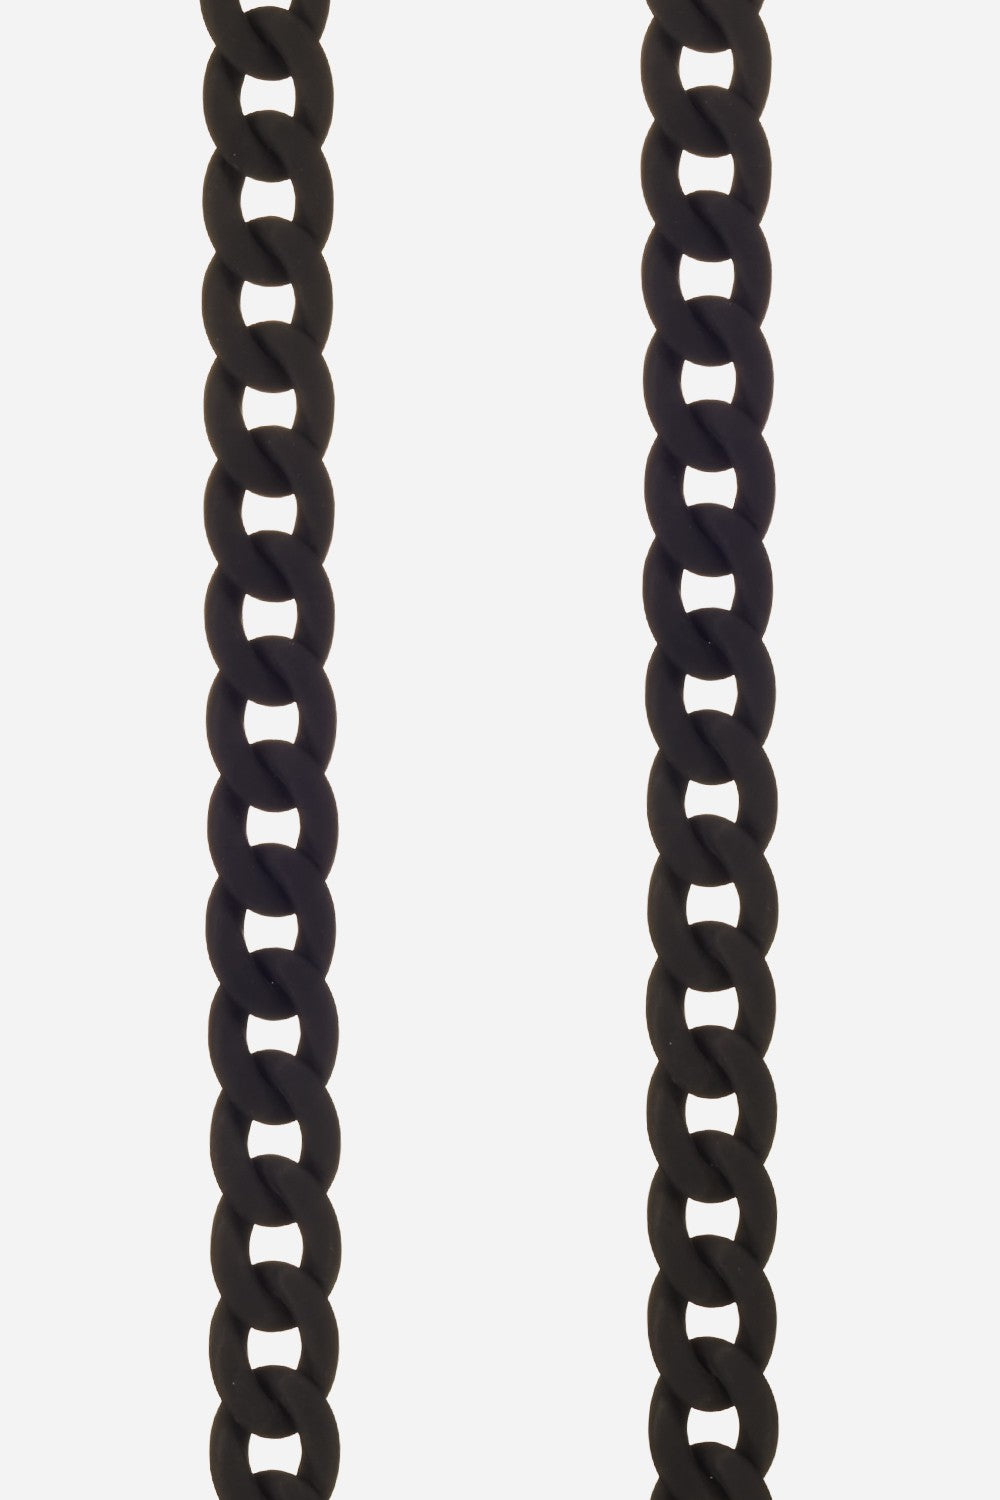 Long Sarah Chain Black 120 cm